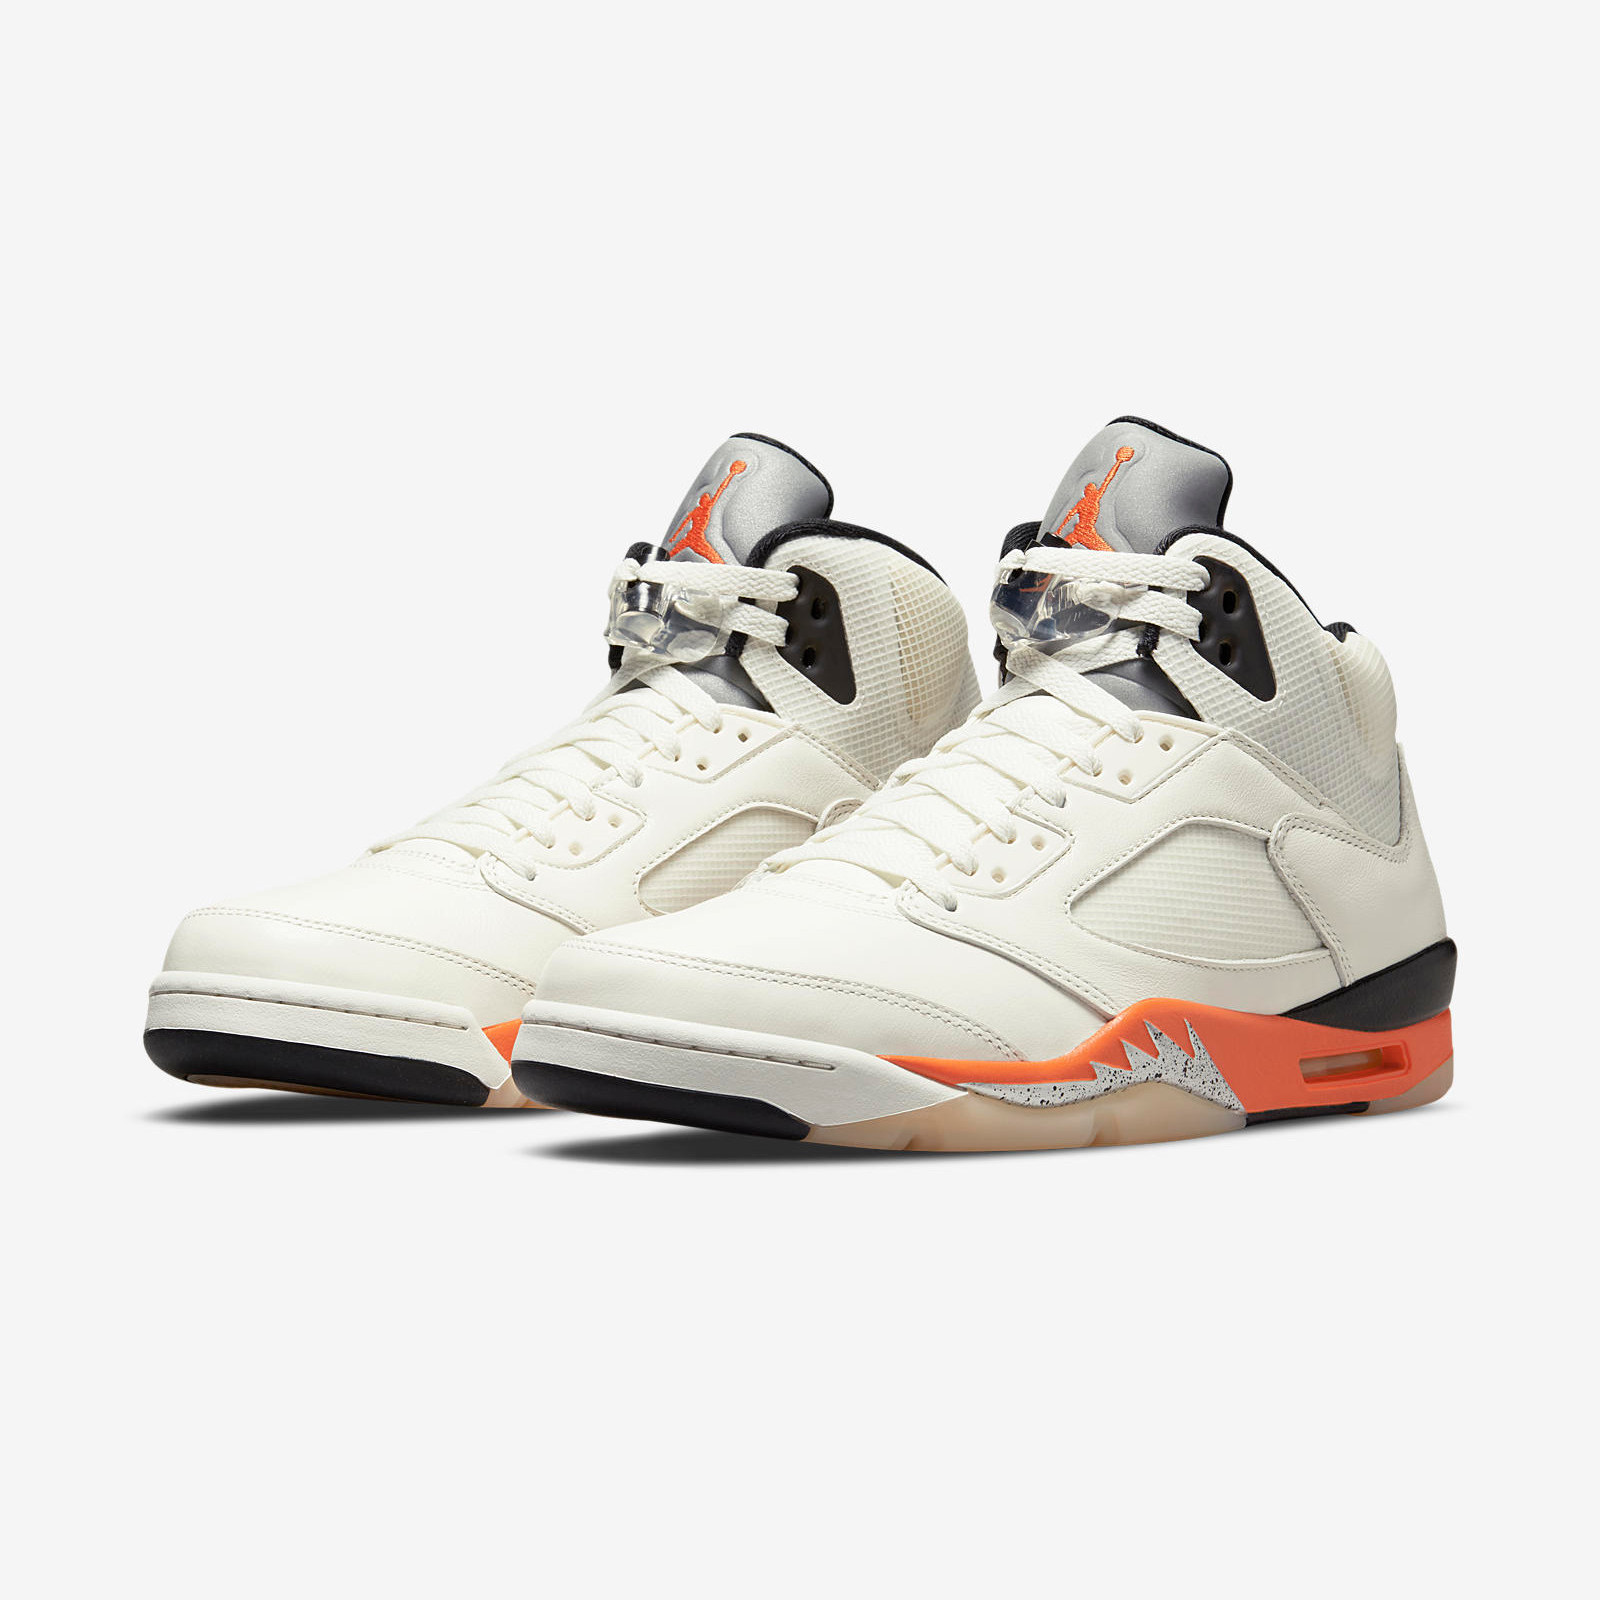 Air Jordan 5 Retro
« Orange Blaze »